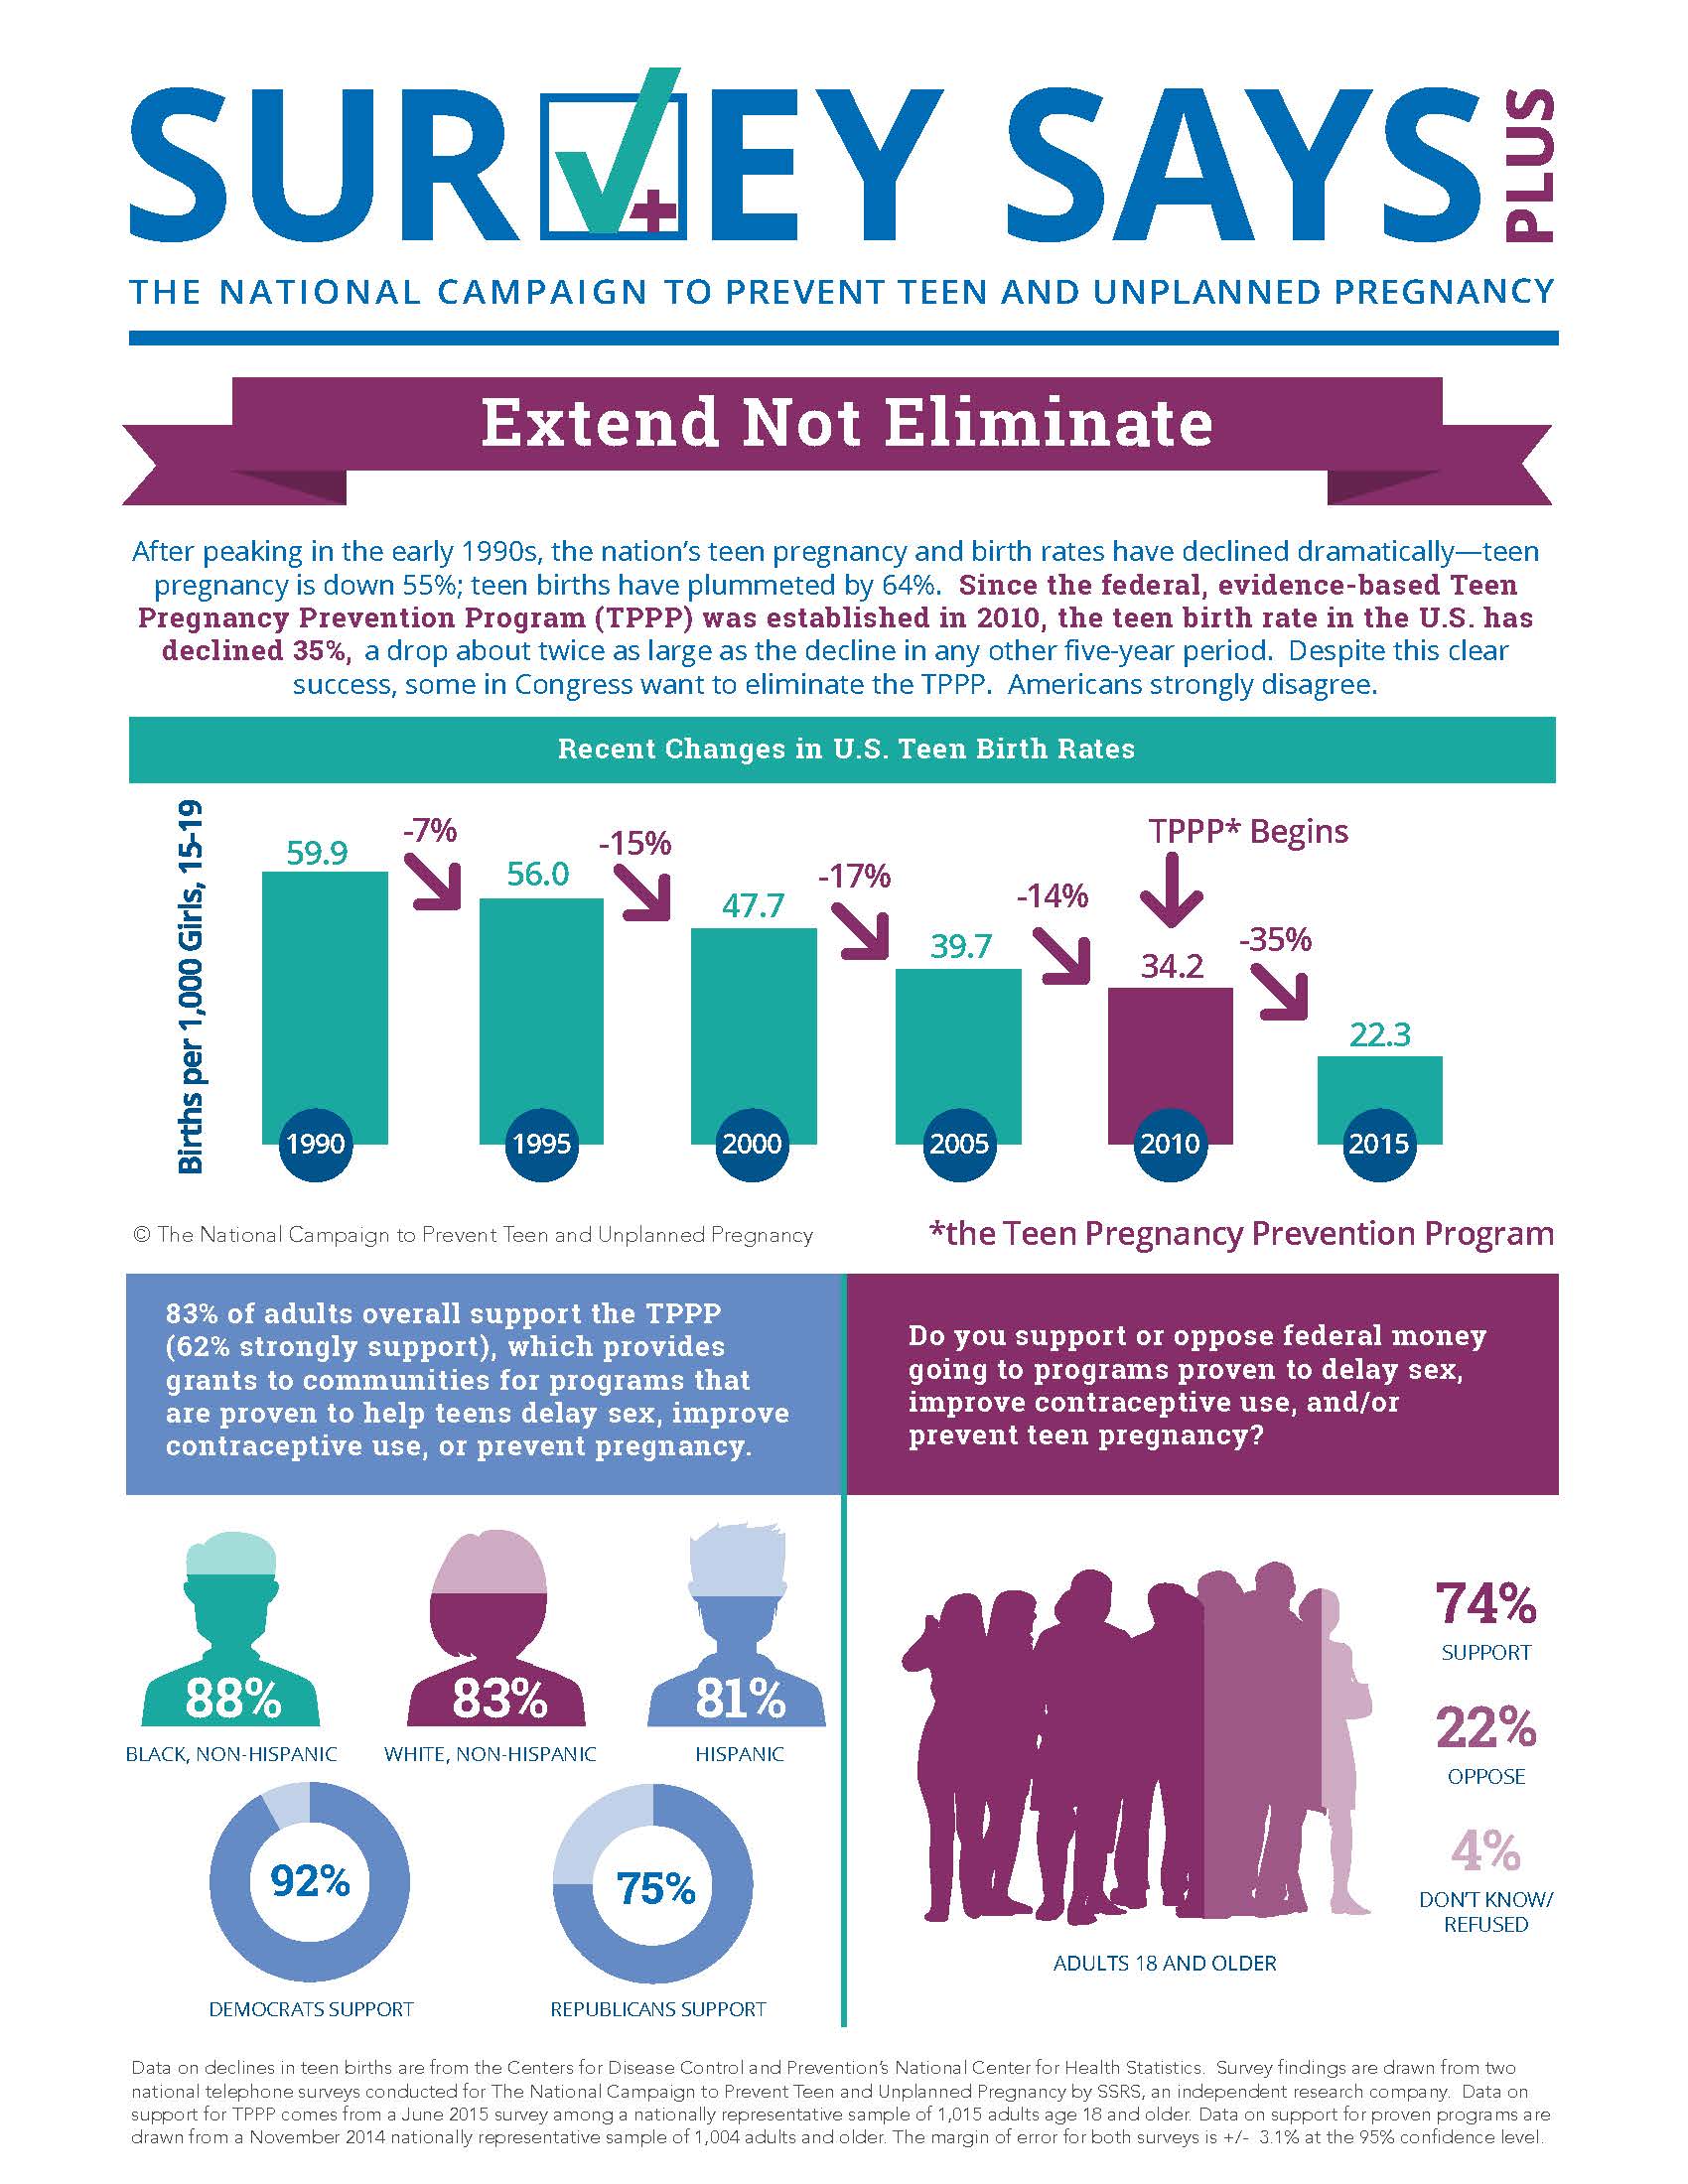 Survey Says Plus: Extend Not Eliminate (July 2015)